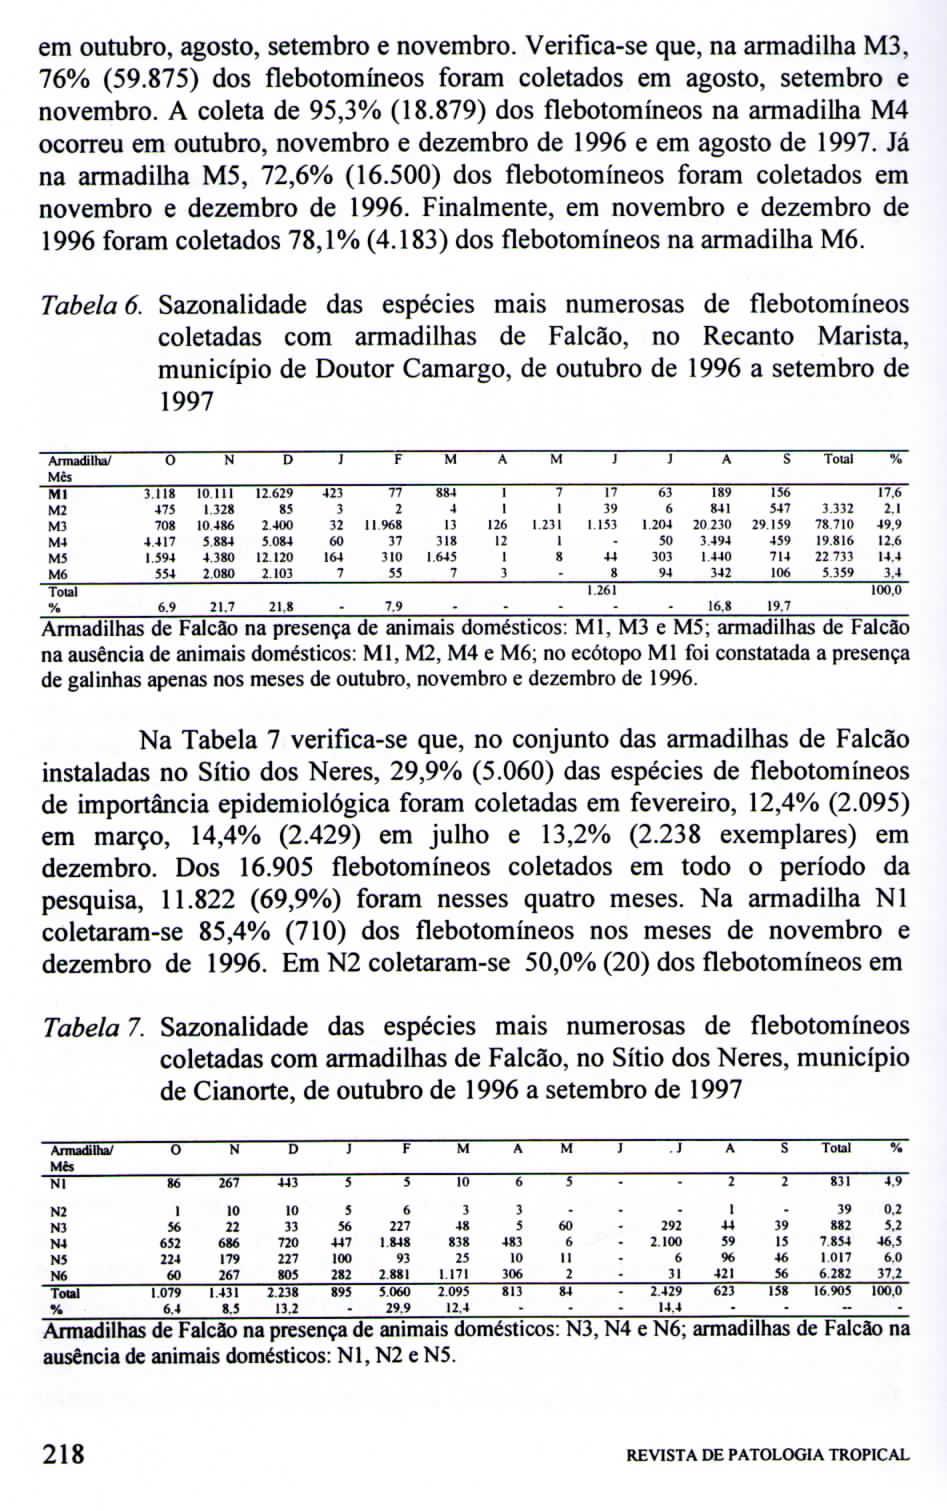 em outubro, agosto, setembro e novembro. Verificase que, na armadilha M3, 76 (59.875) dos flebotomíneos foram coletados em agosto, setembro e novembro. A coleta de 95,3 (8.